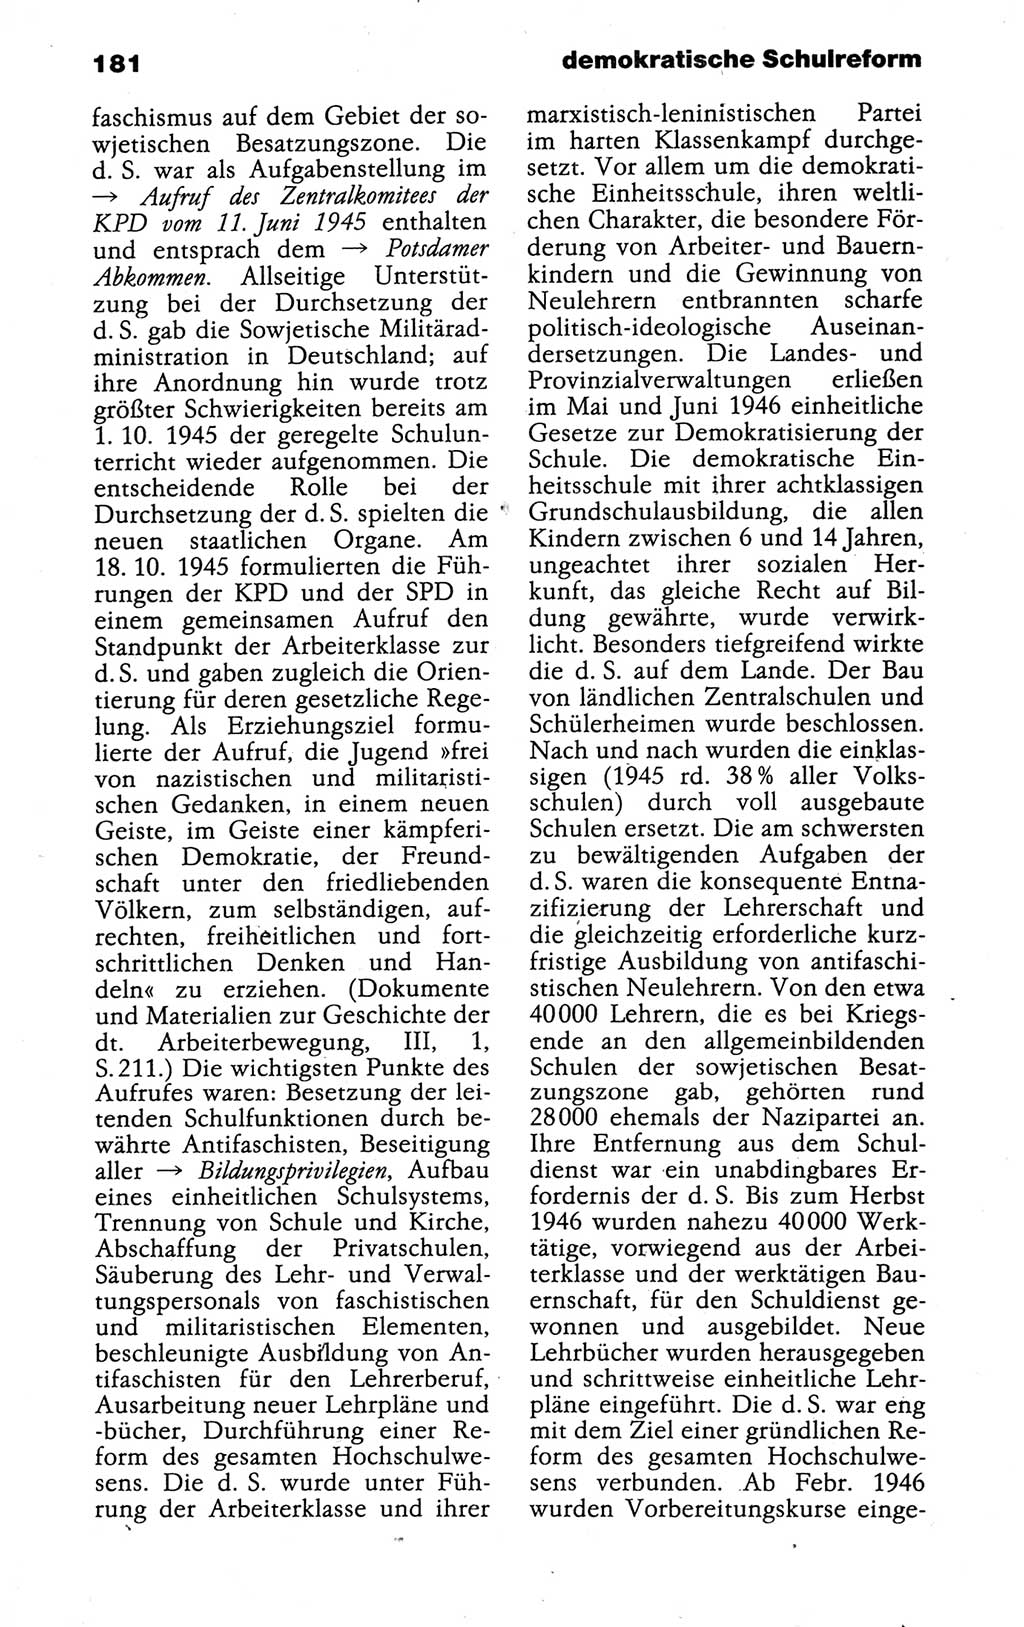 Kleines politisches Wörterbuch [Deutsche Demokratische Republik (DDR)] 1988, Seite 181 (Kl. pol. Wb. DDR 1988, S. 181)